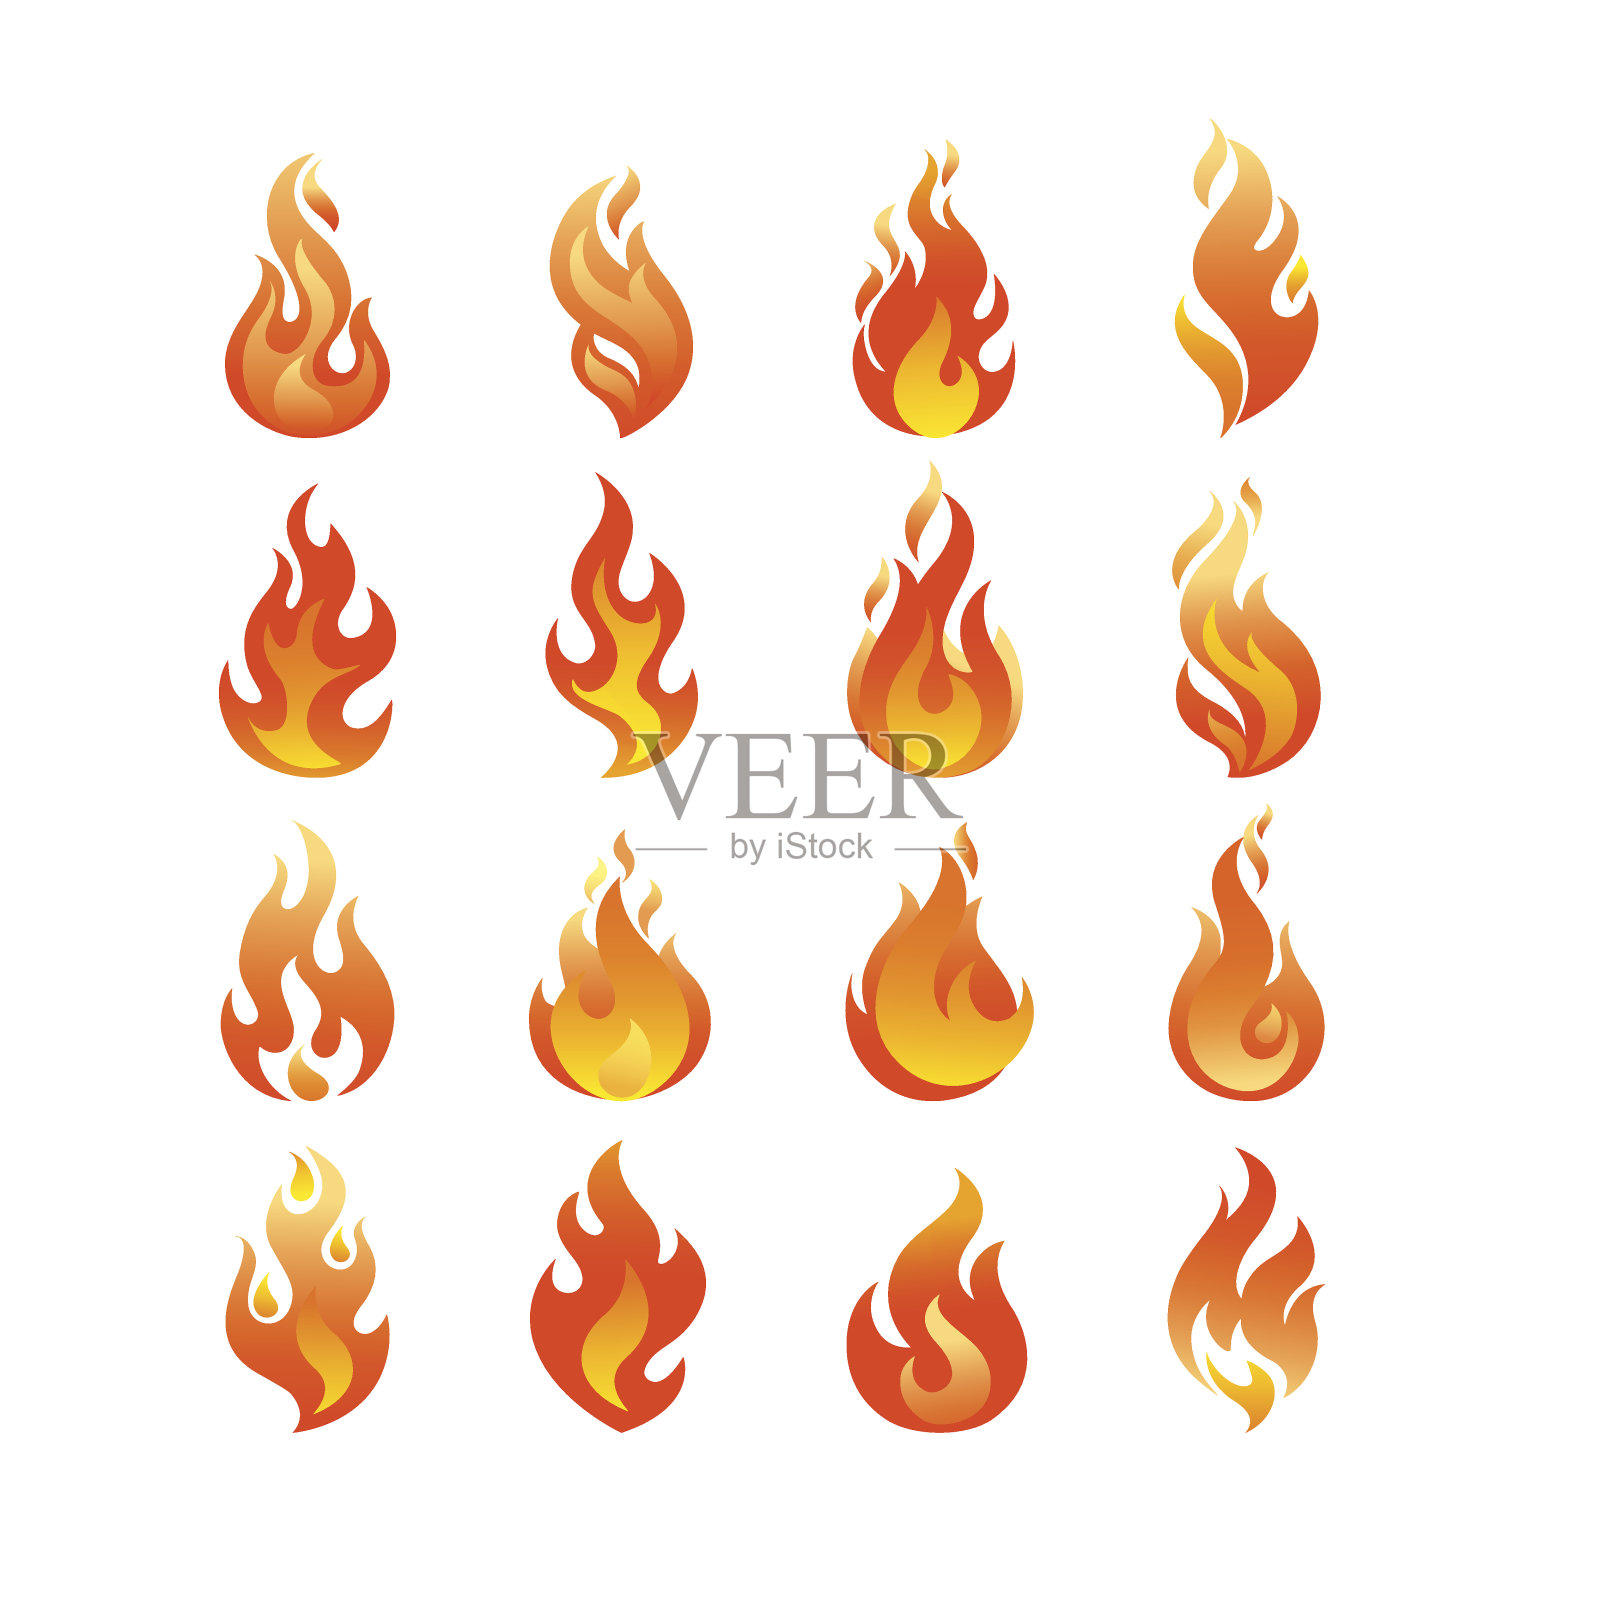 红色燃烧的火焰图标集设计矢量模板。燃烧火球概念图标包。热地狱插图。篝火创造性的集合。图标素材